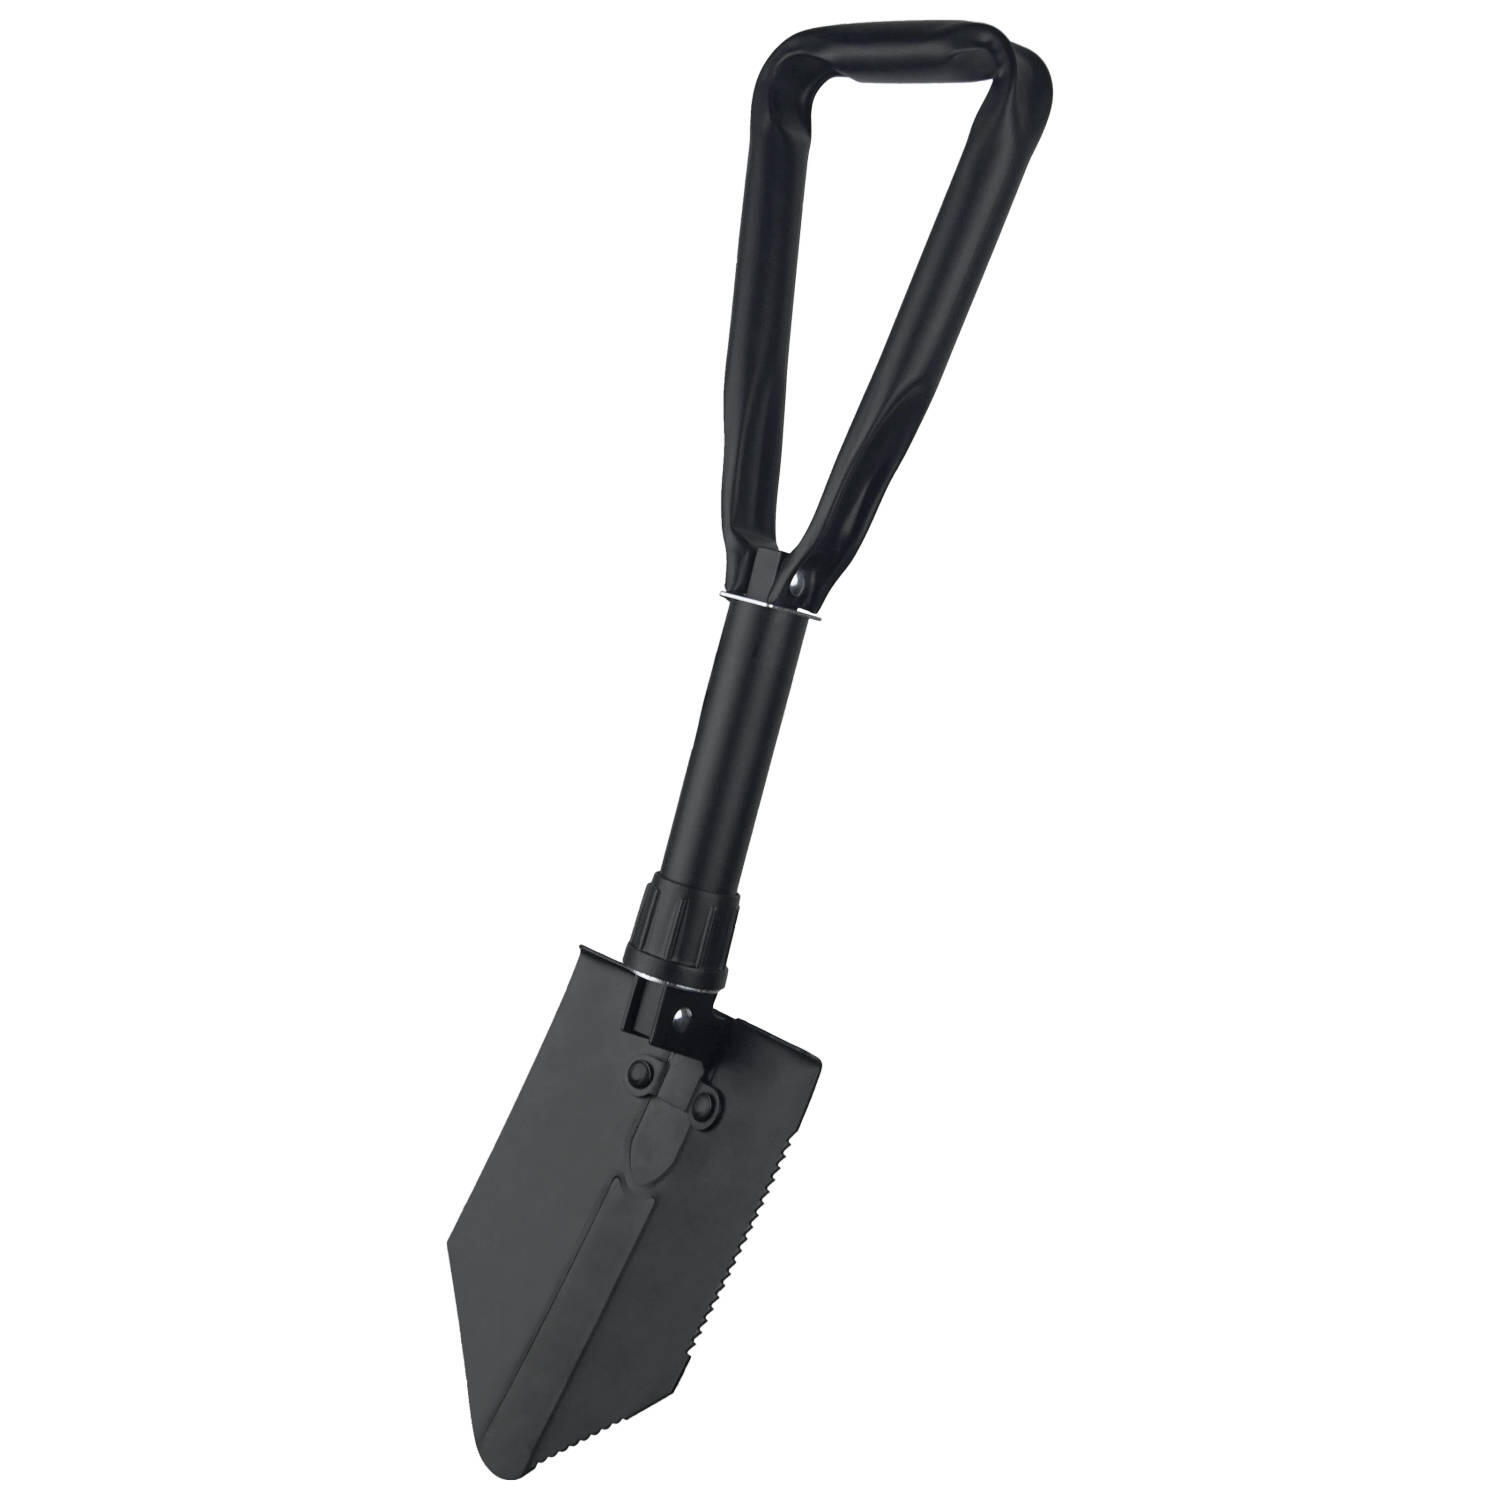 Lomo Tri Folding Army Entrenching Tool Shovel - Black 7/7